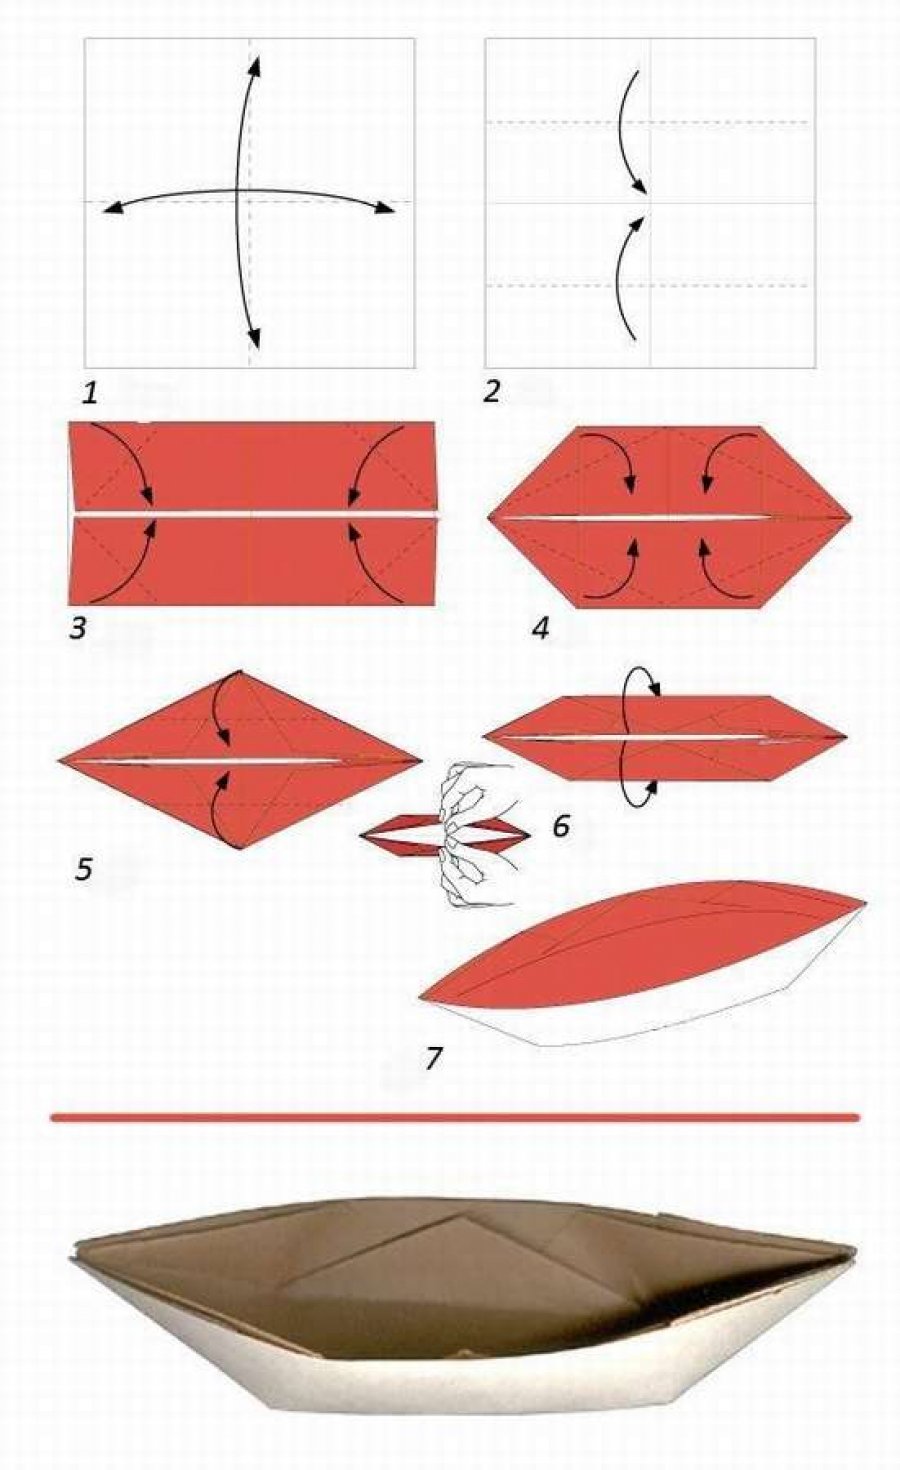 Схема кораблика оригами для детей. Схема как сделать кораблик из бумаги. Как делать кораблик из бумаги а4. Как делать бумажный кораблик из листа а4. Как складывать кораблик из бумаги а4.